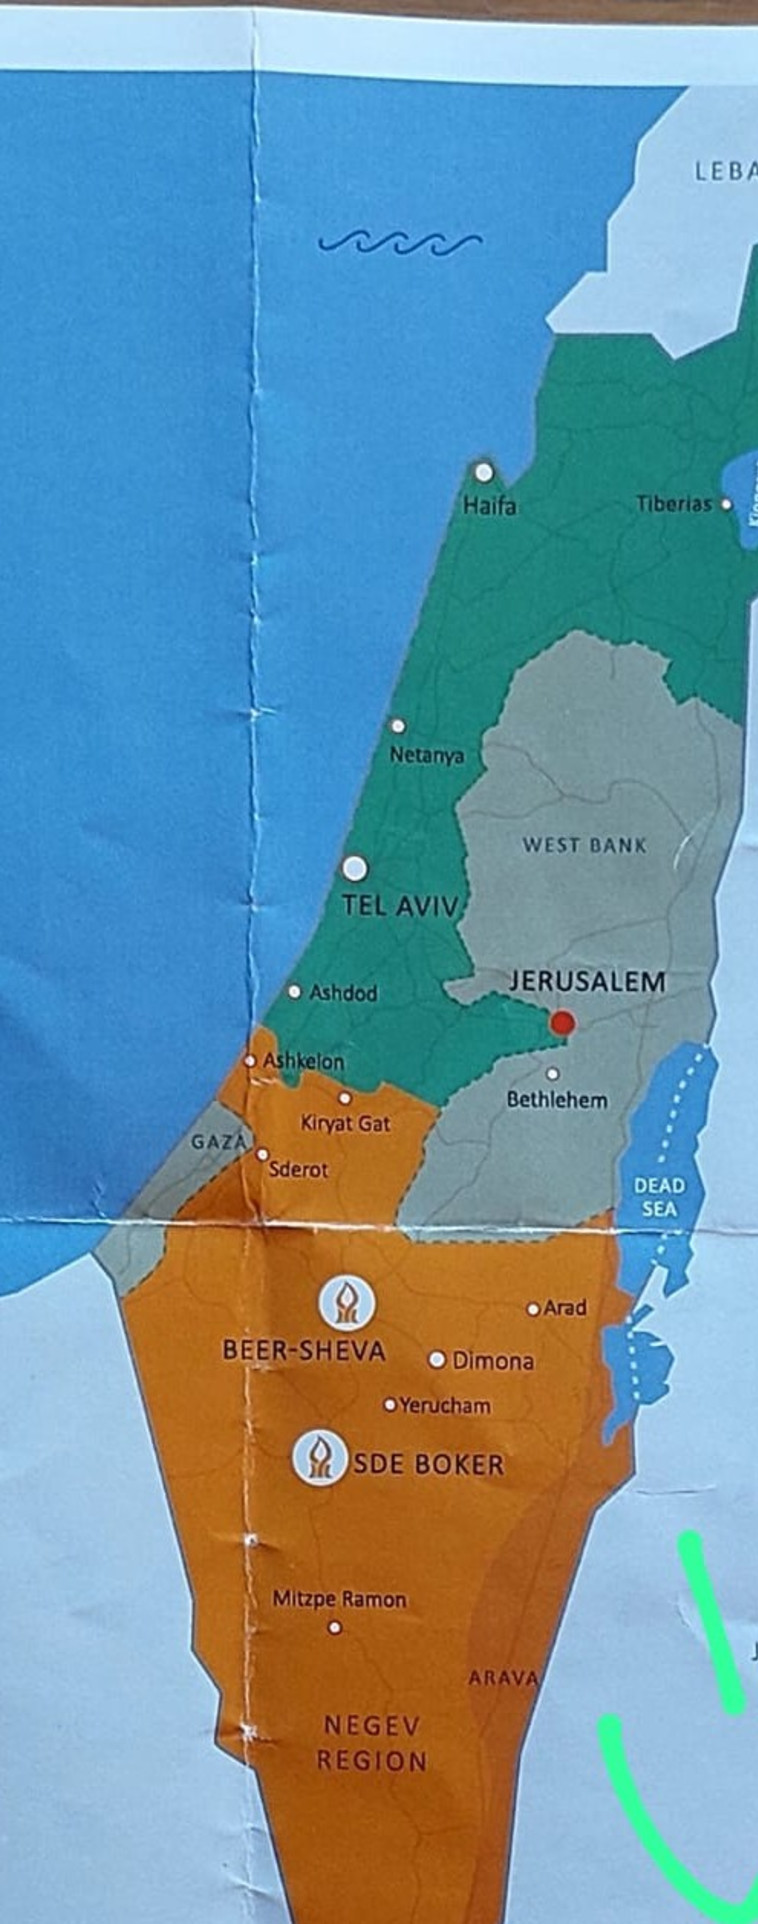 המפה באוניברסיטת בן גוריון (צילום: אם תרצו)